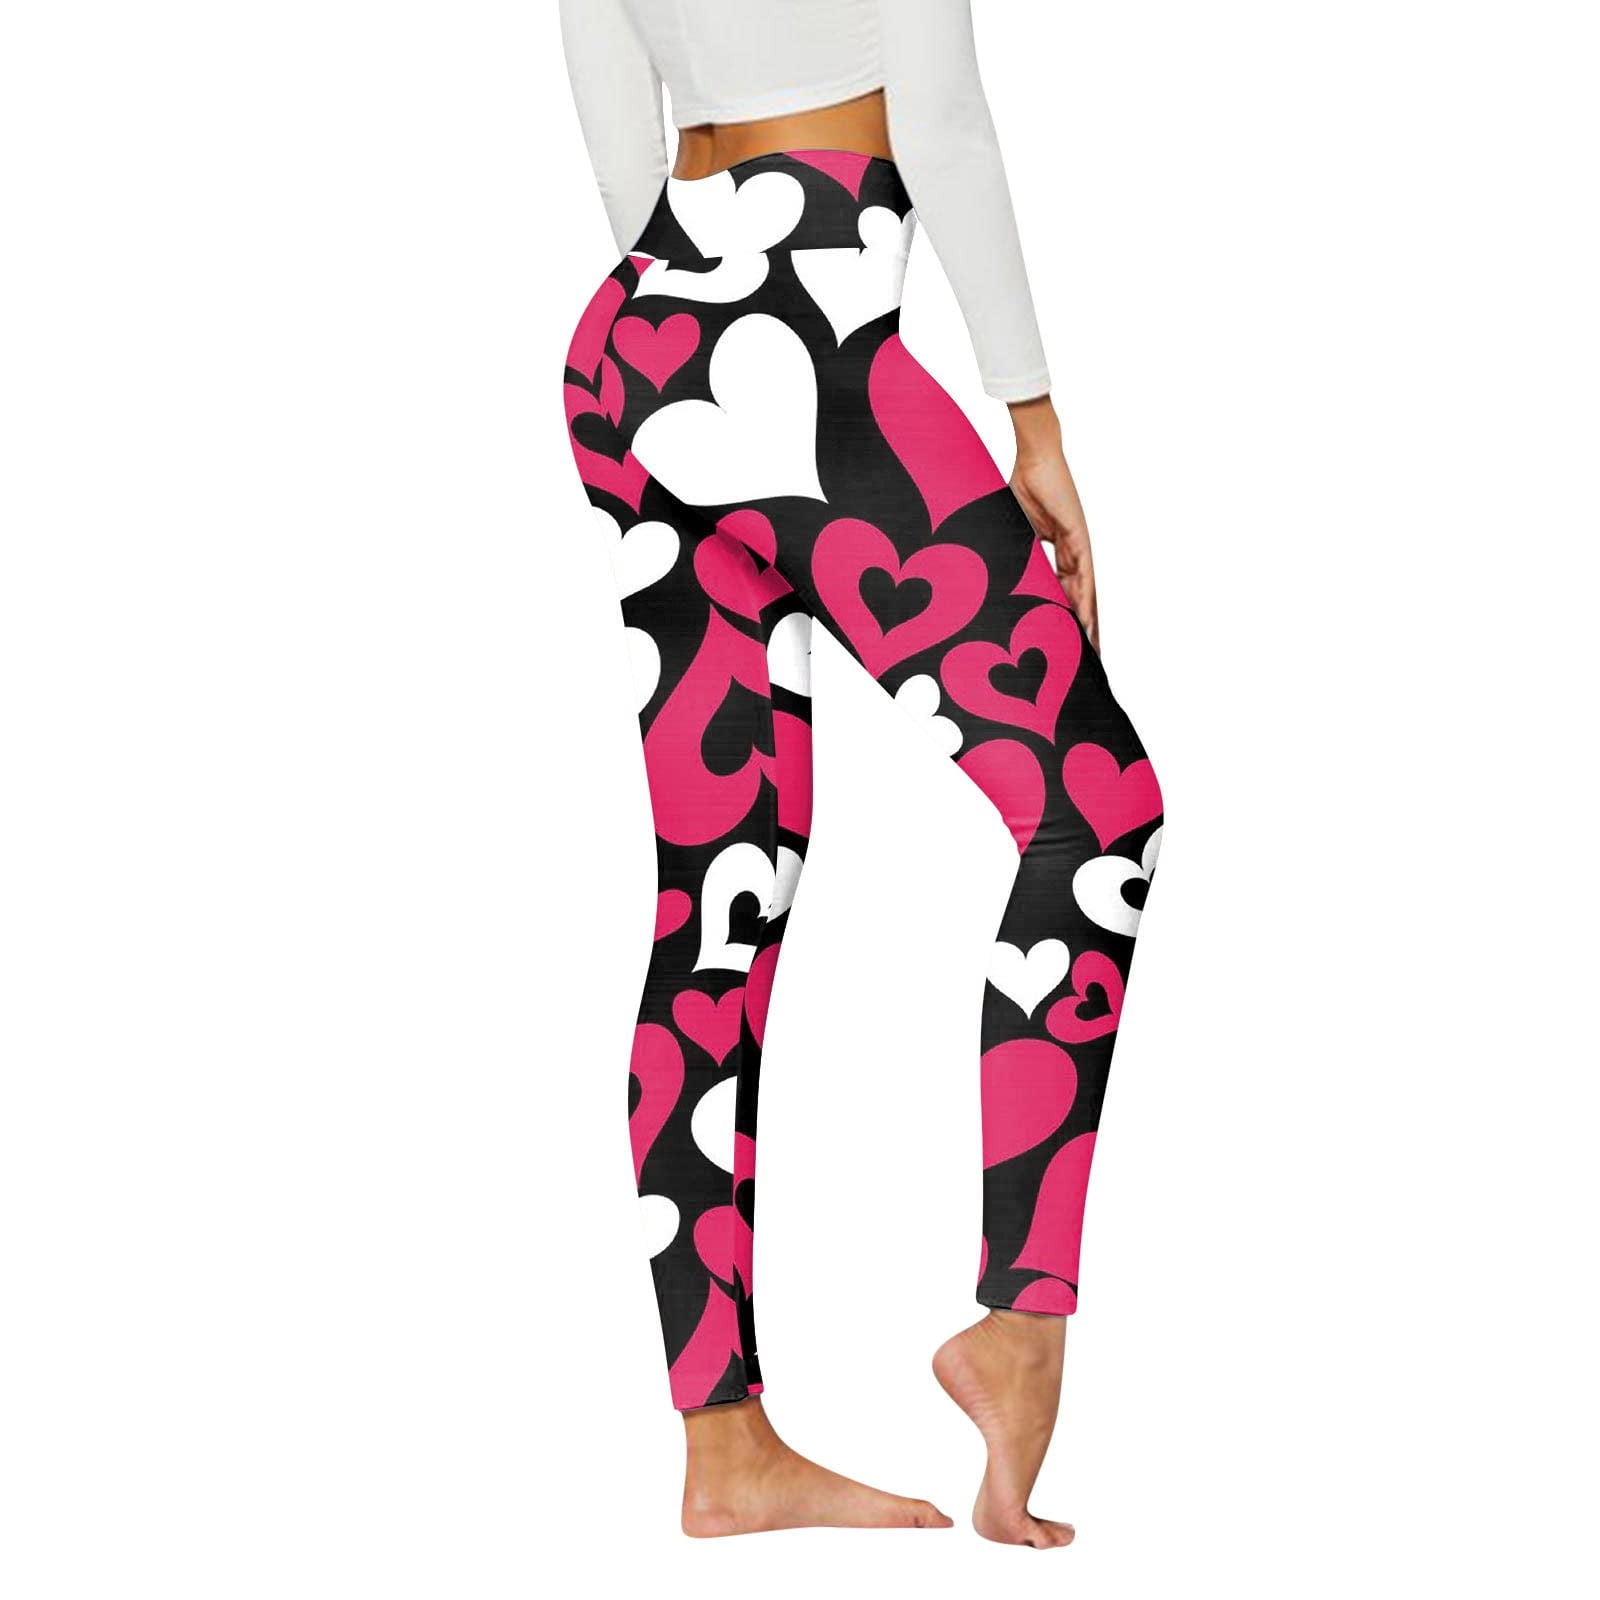 Ayolanni Leggings for Women Women's Casual Printed Yoga Pants